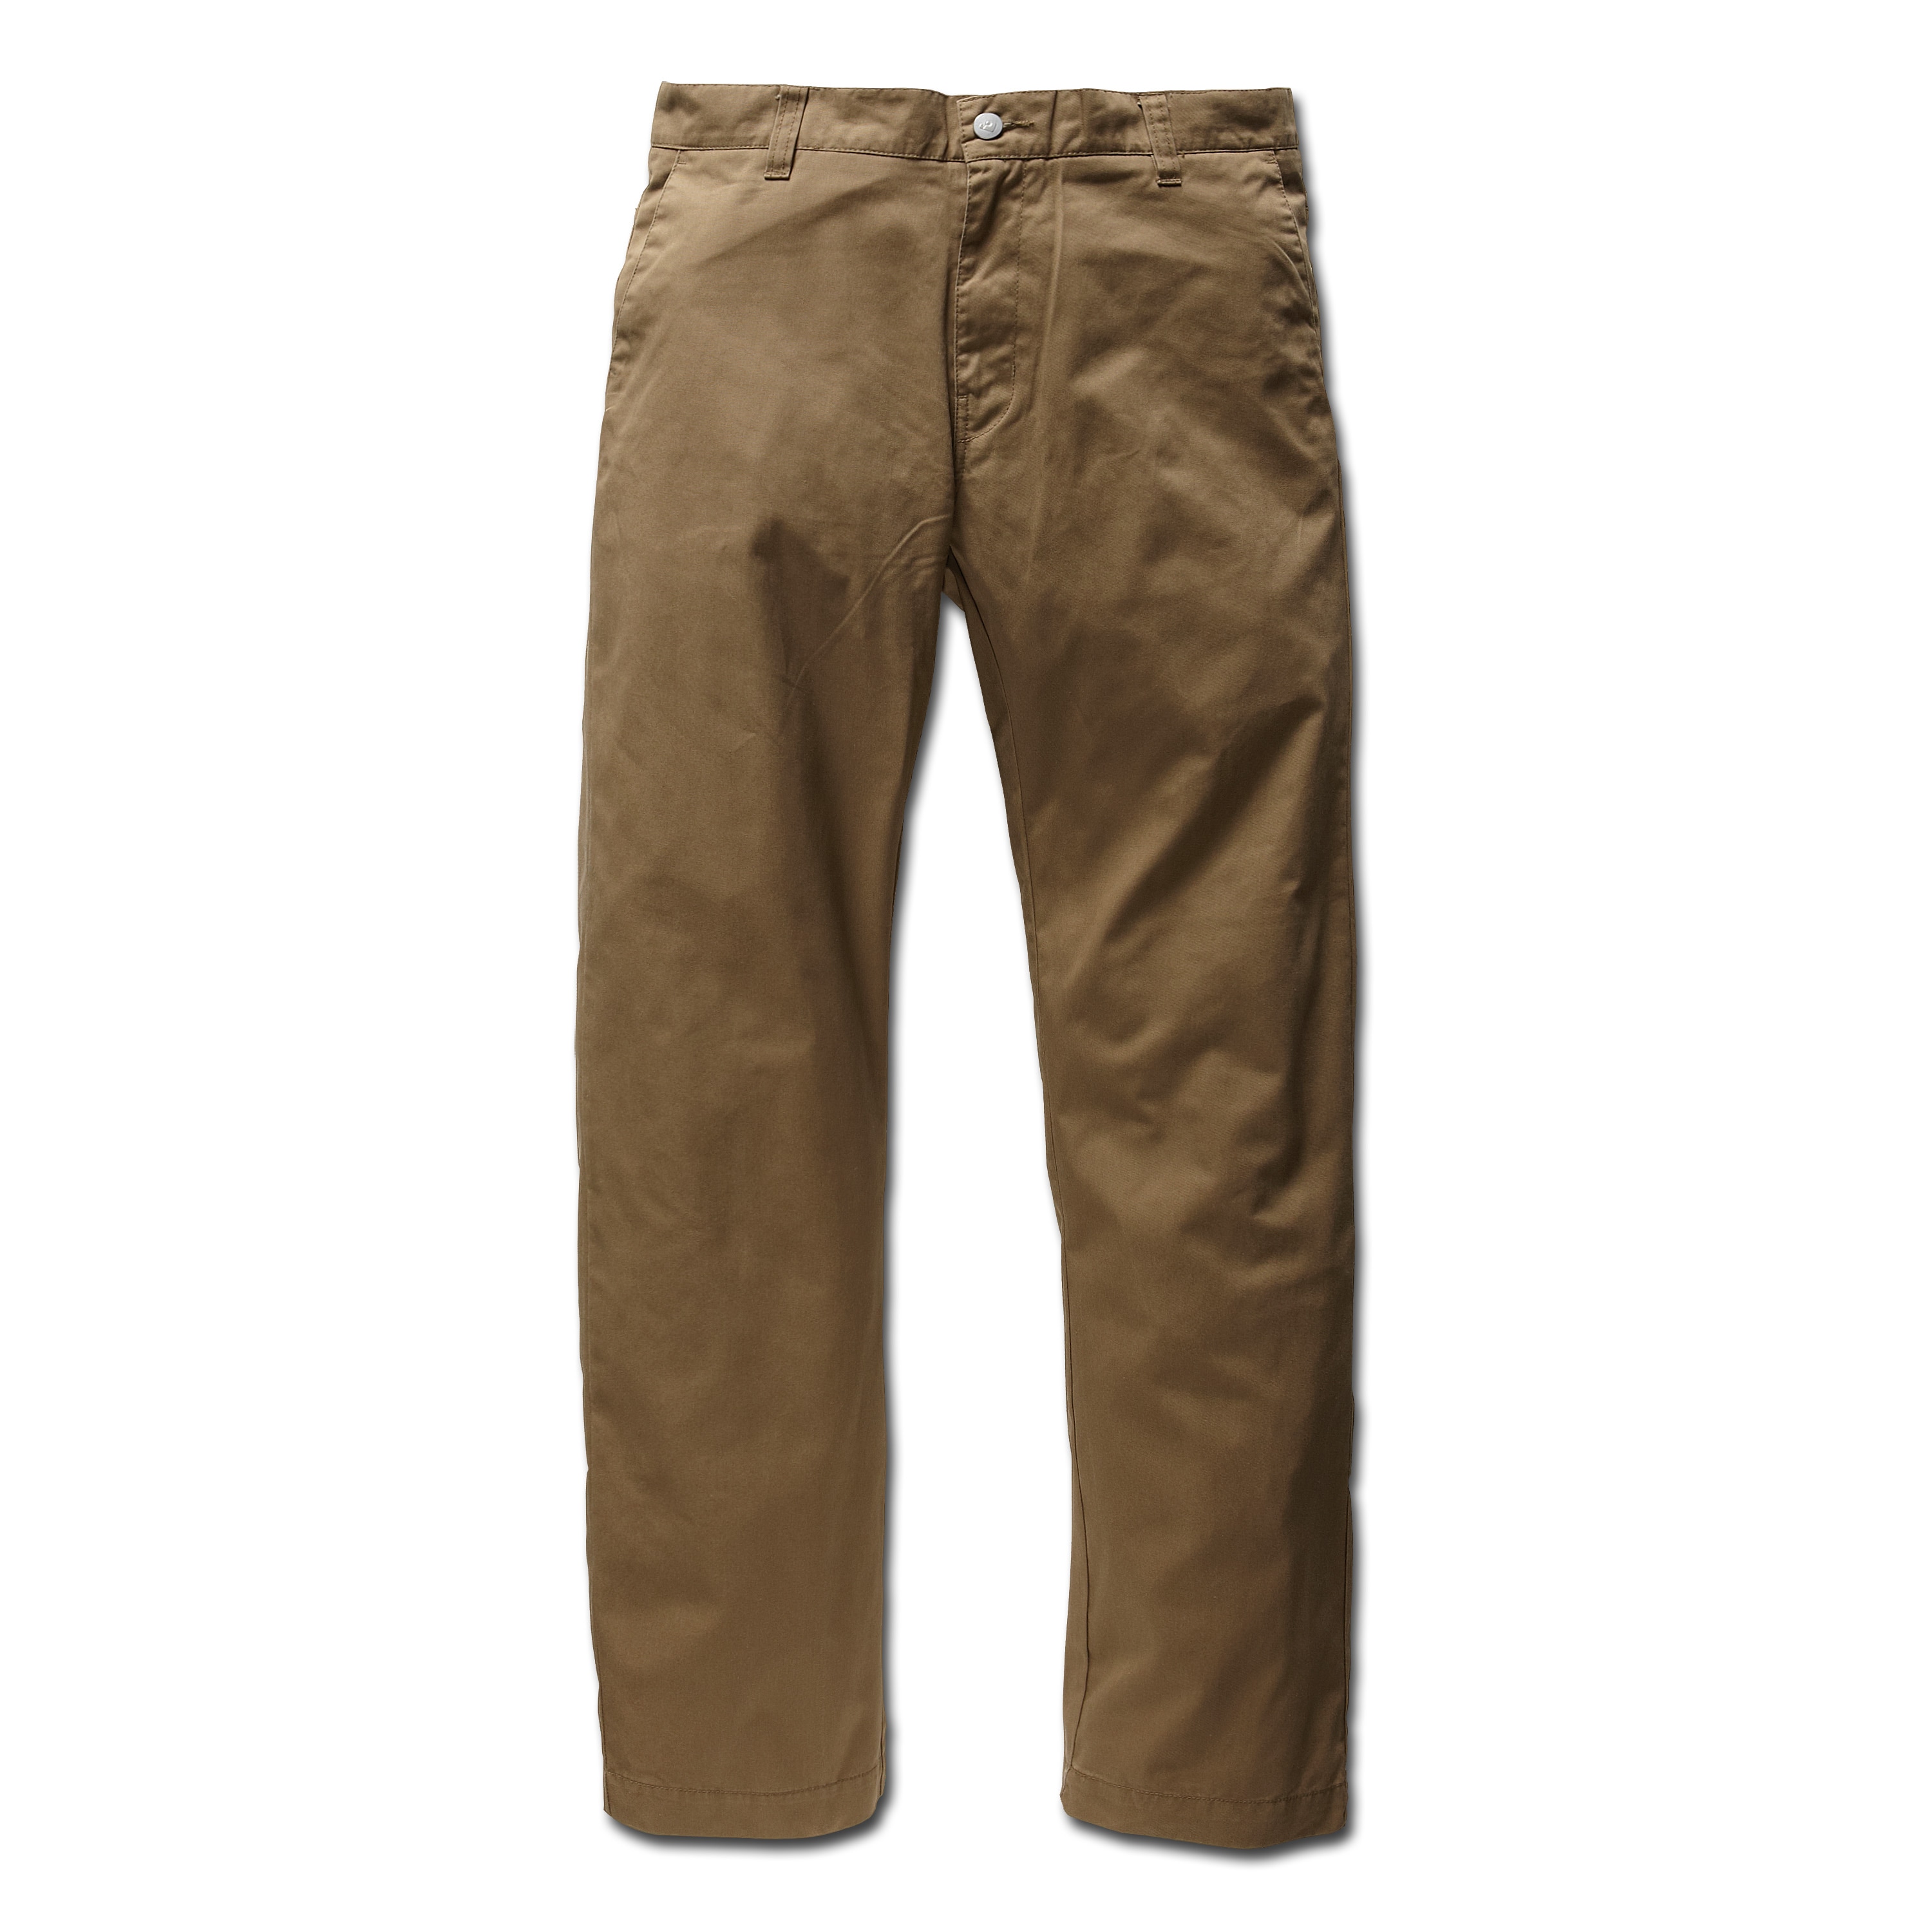 Pants Vintage Industries Seyburn Chino brown | Pants Vintage Industries ...